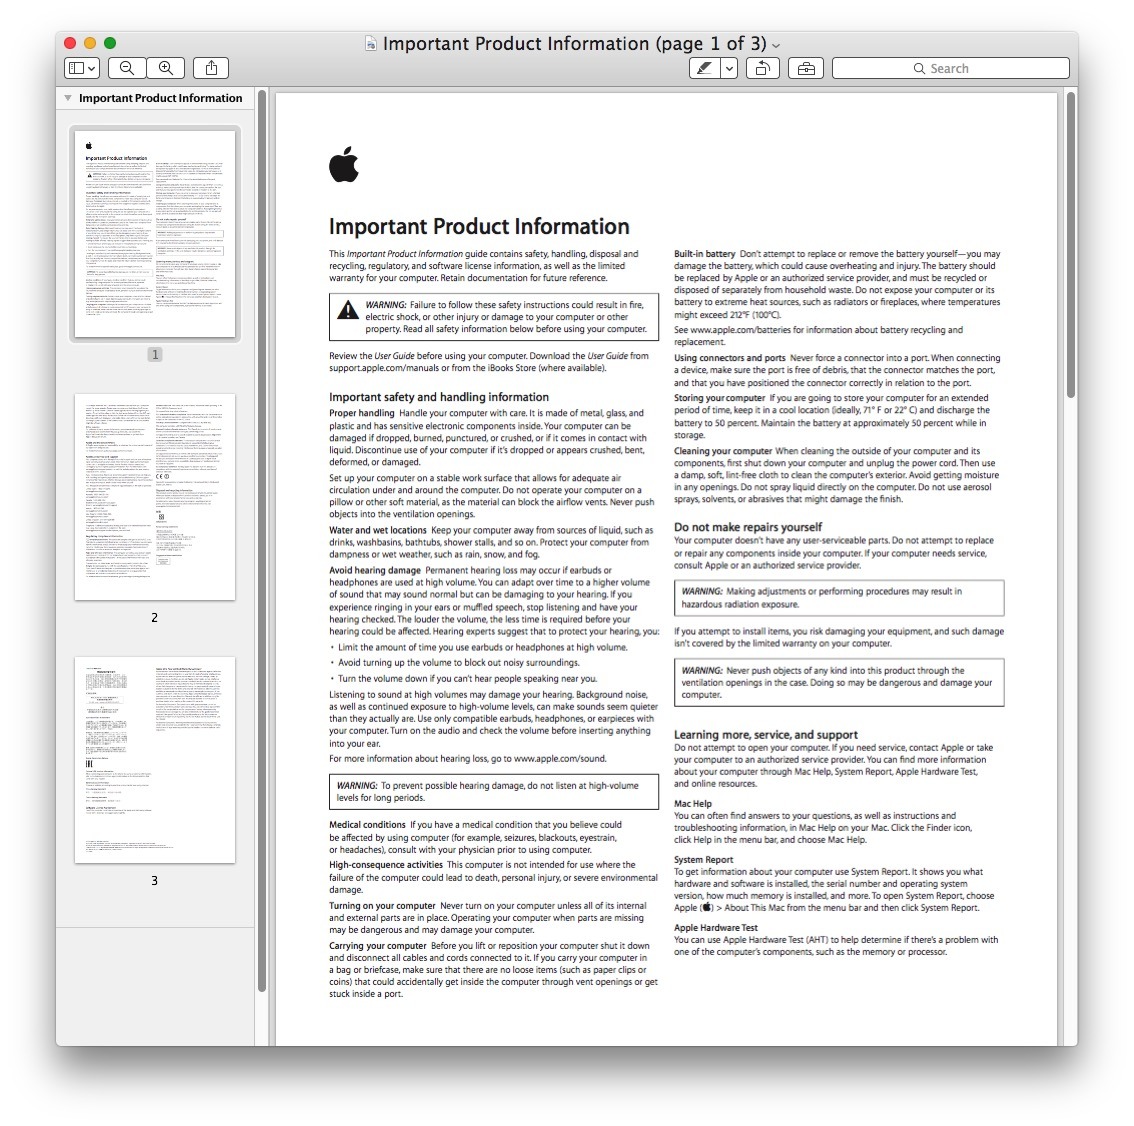 Файл PDF, открытый в Preview на Mac, готов к поиску